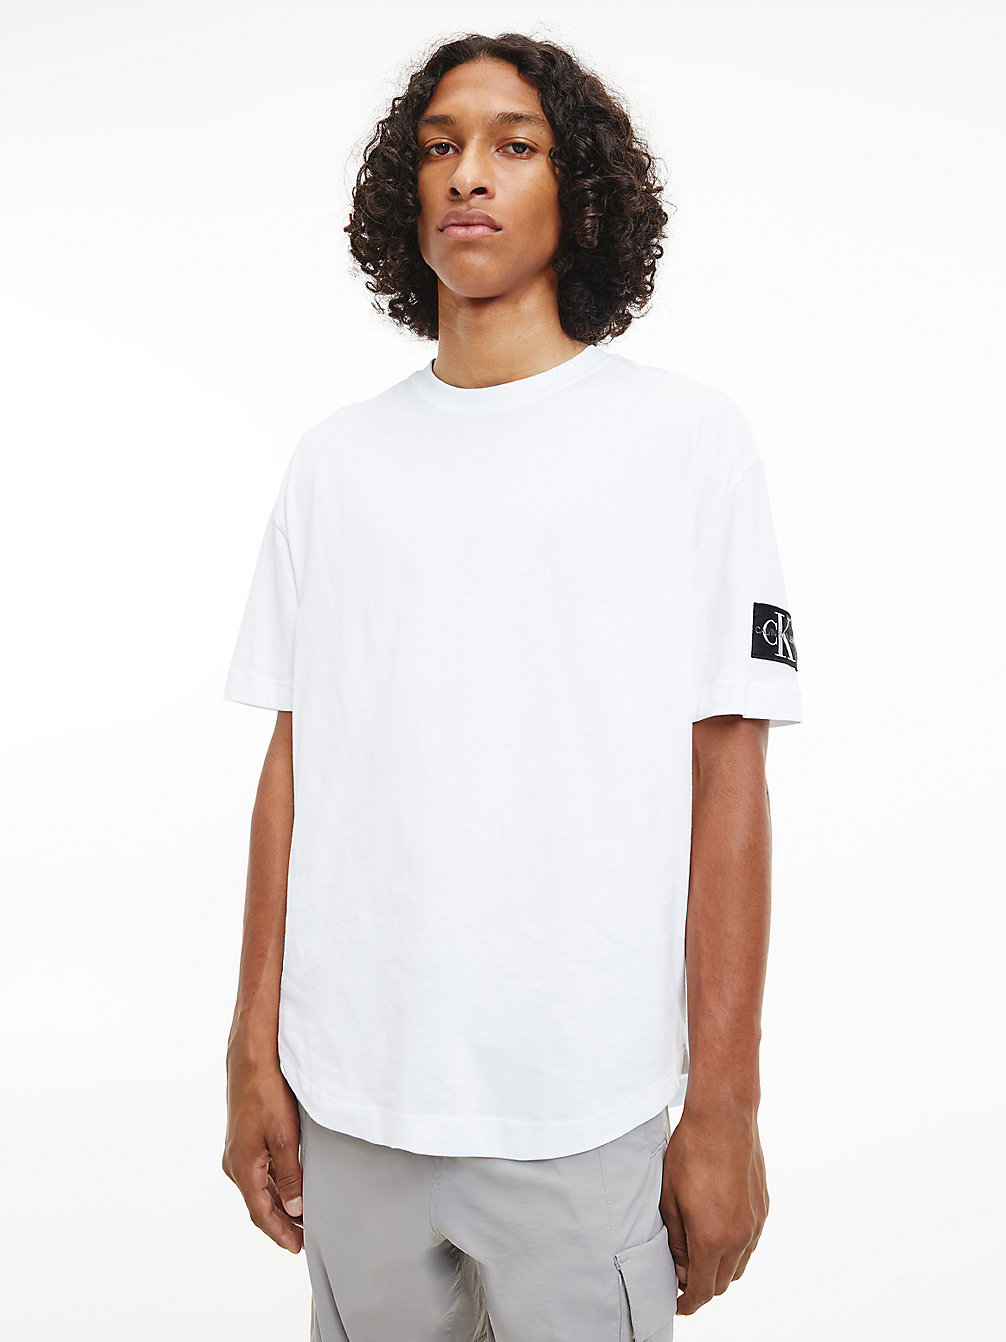 BRIGHT WHITE > Swobodny T-Shirt Z Naszywką Z Monogramem > undefined Mężczyźni - Calvin Klein